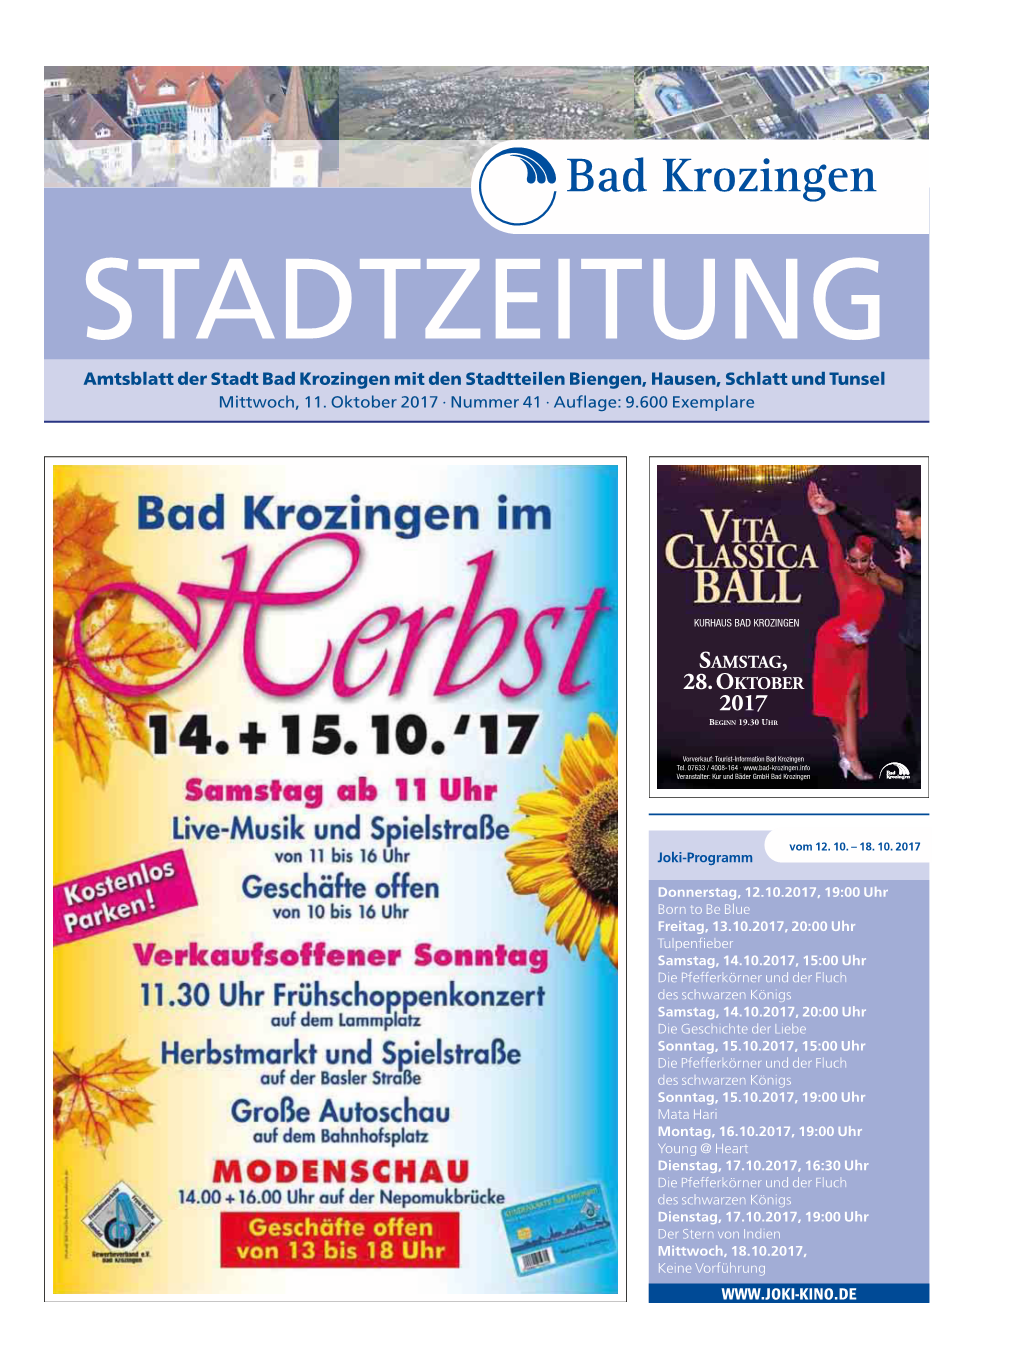 Amtsblatt Der Stadt Bad Krozingen Mit Den Stadtteilen Biengen, Hausen, Schlatt Und Tunsel Mittwoch, 11